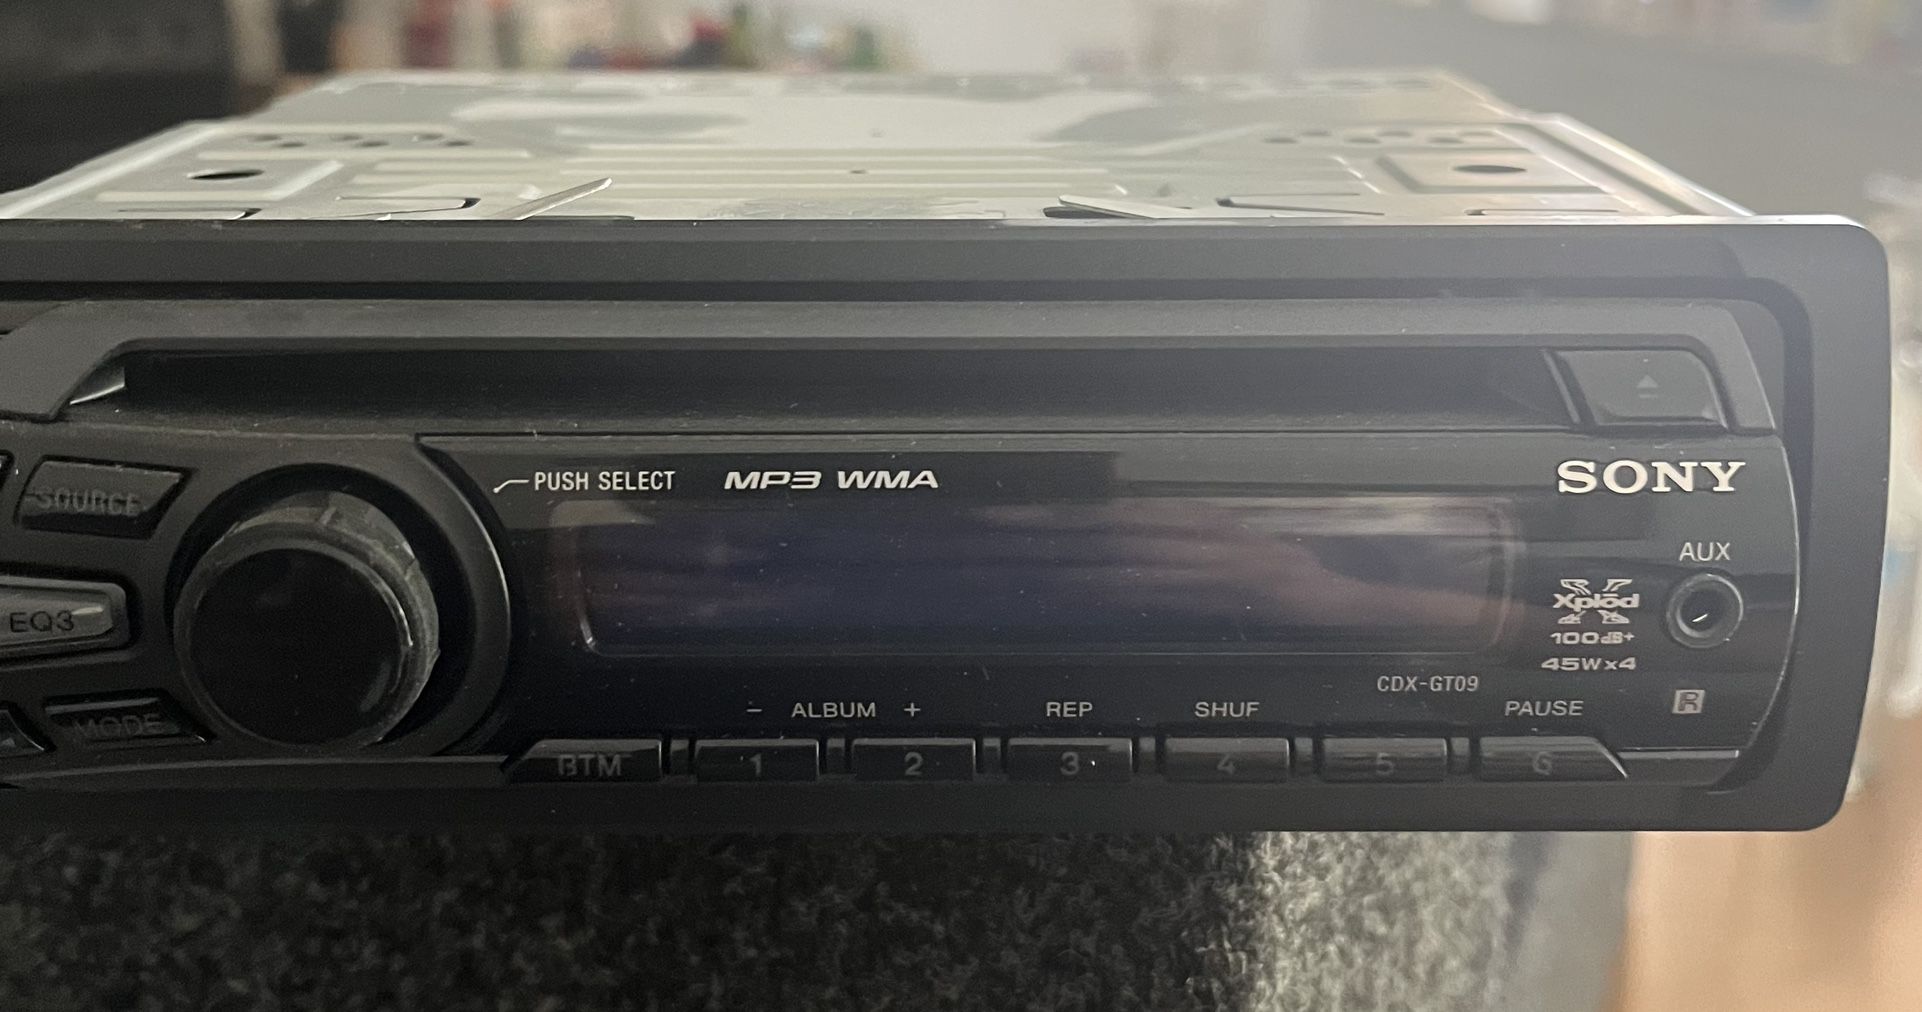 Sony Cd Car With MP3